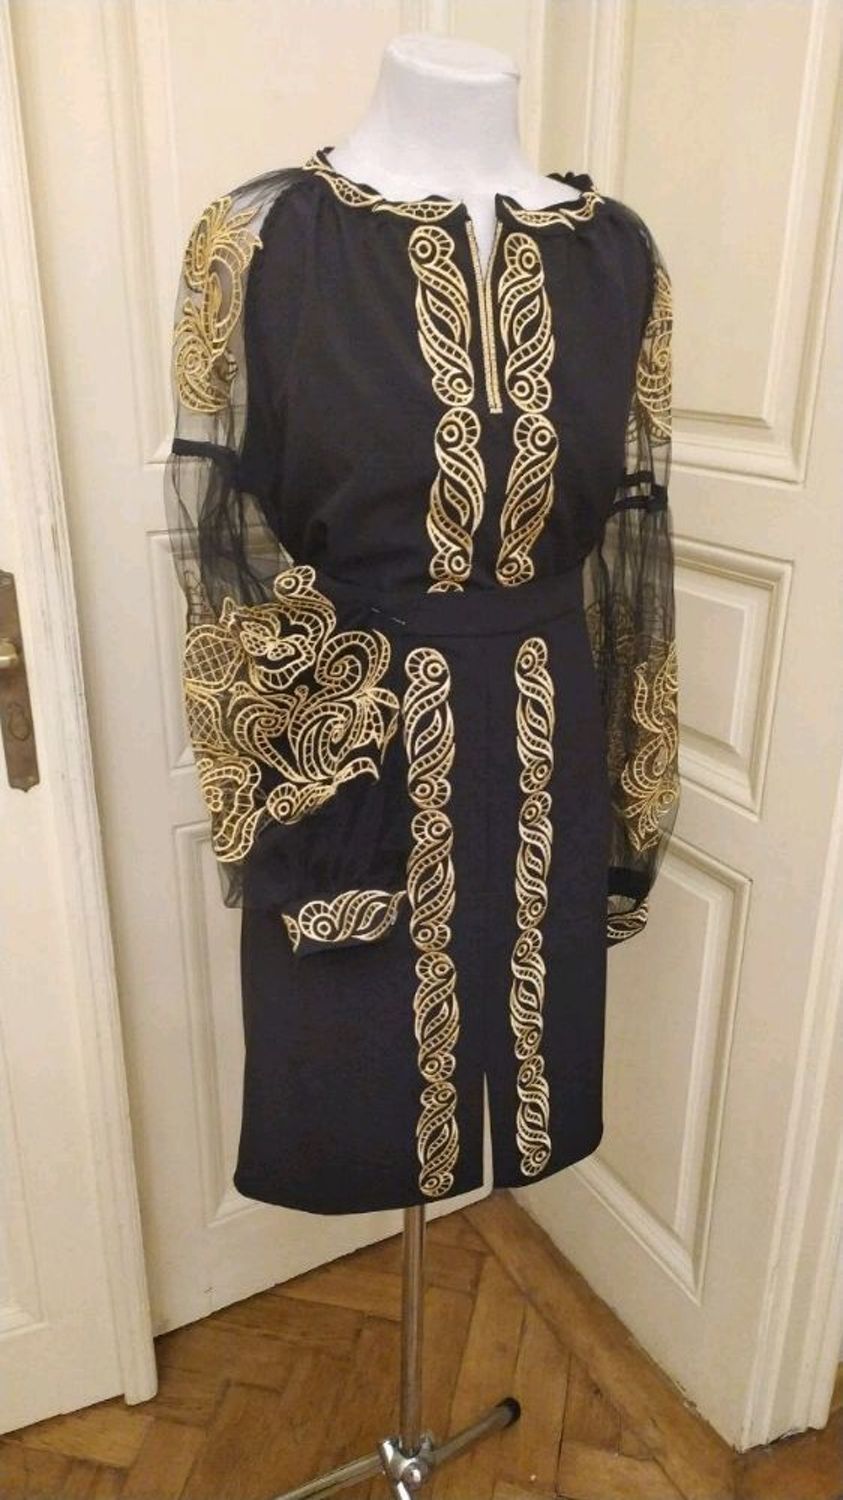 Фото №1 к отзыву покупателя Ирина о товаре Шикарная вышитая блузка с рукавами из евро-фатина с элементами ришелье